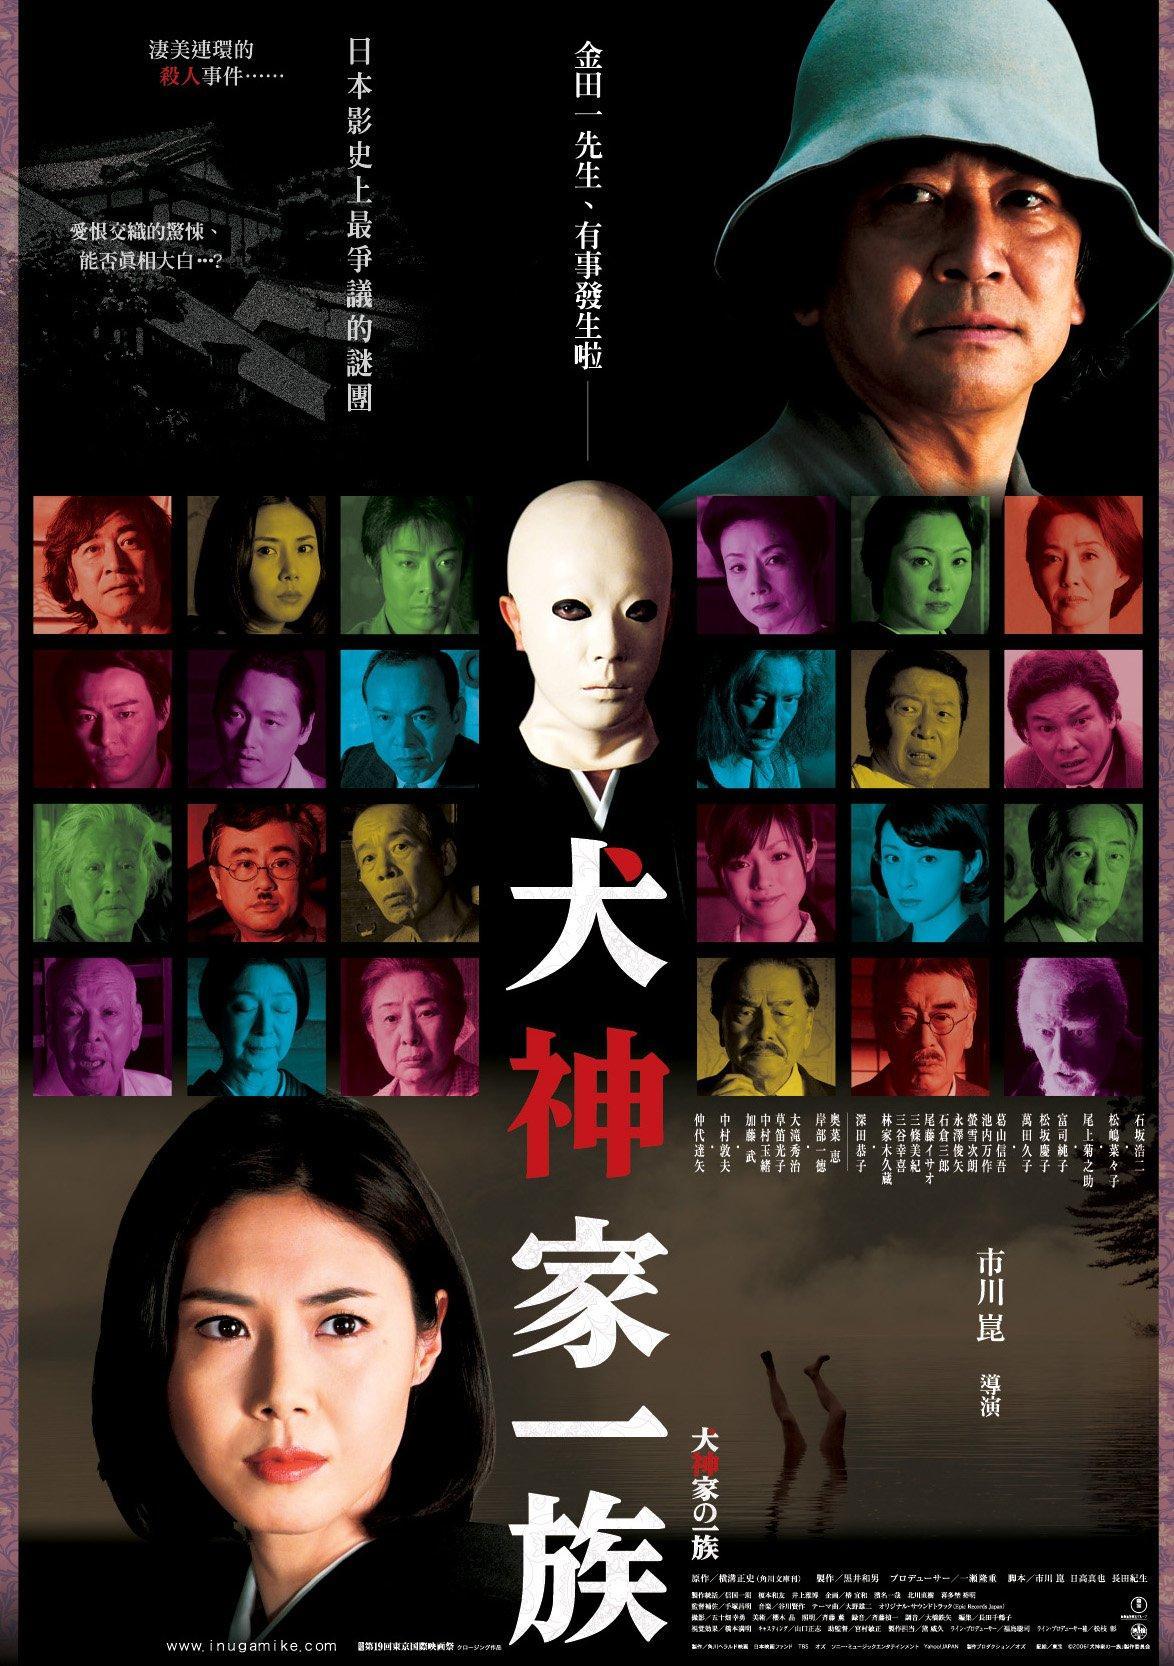 Постер фильма Убийца клана Инугами | Inugami-ke no ichizoku